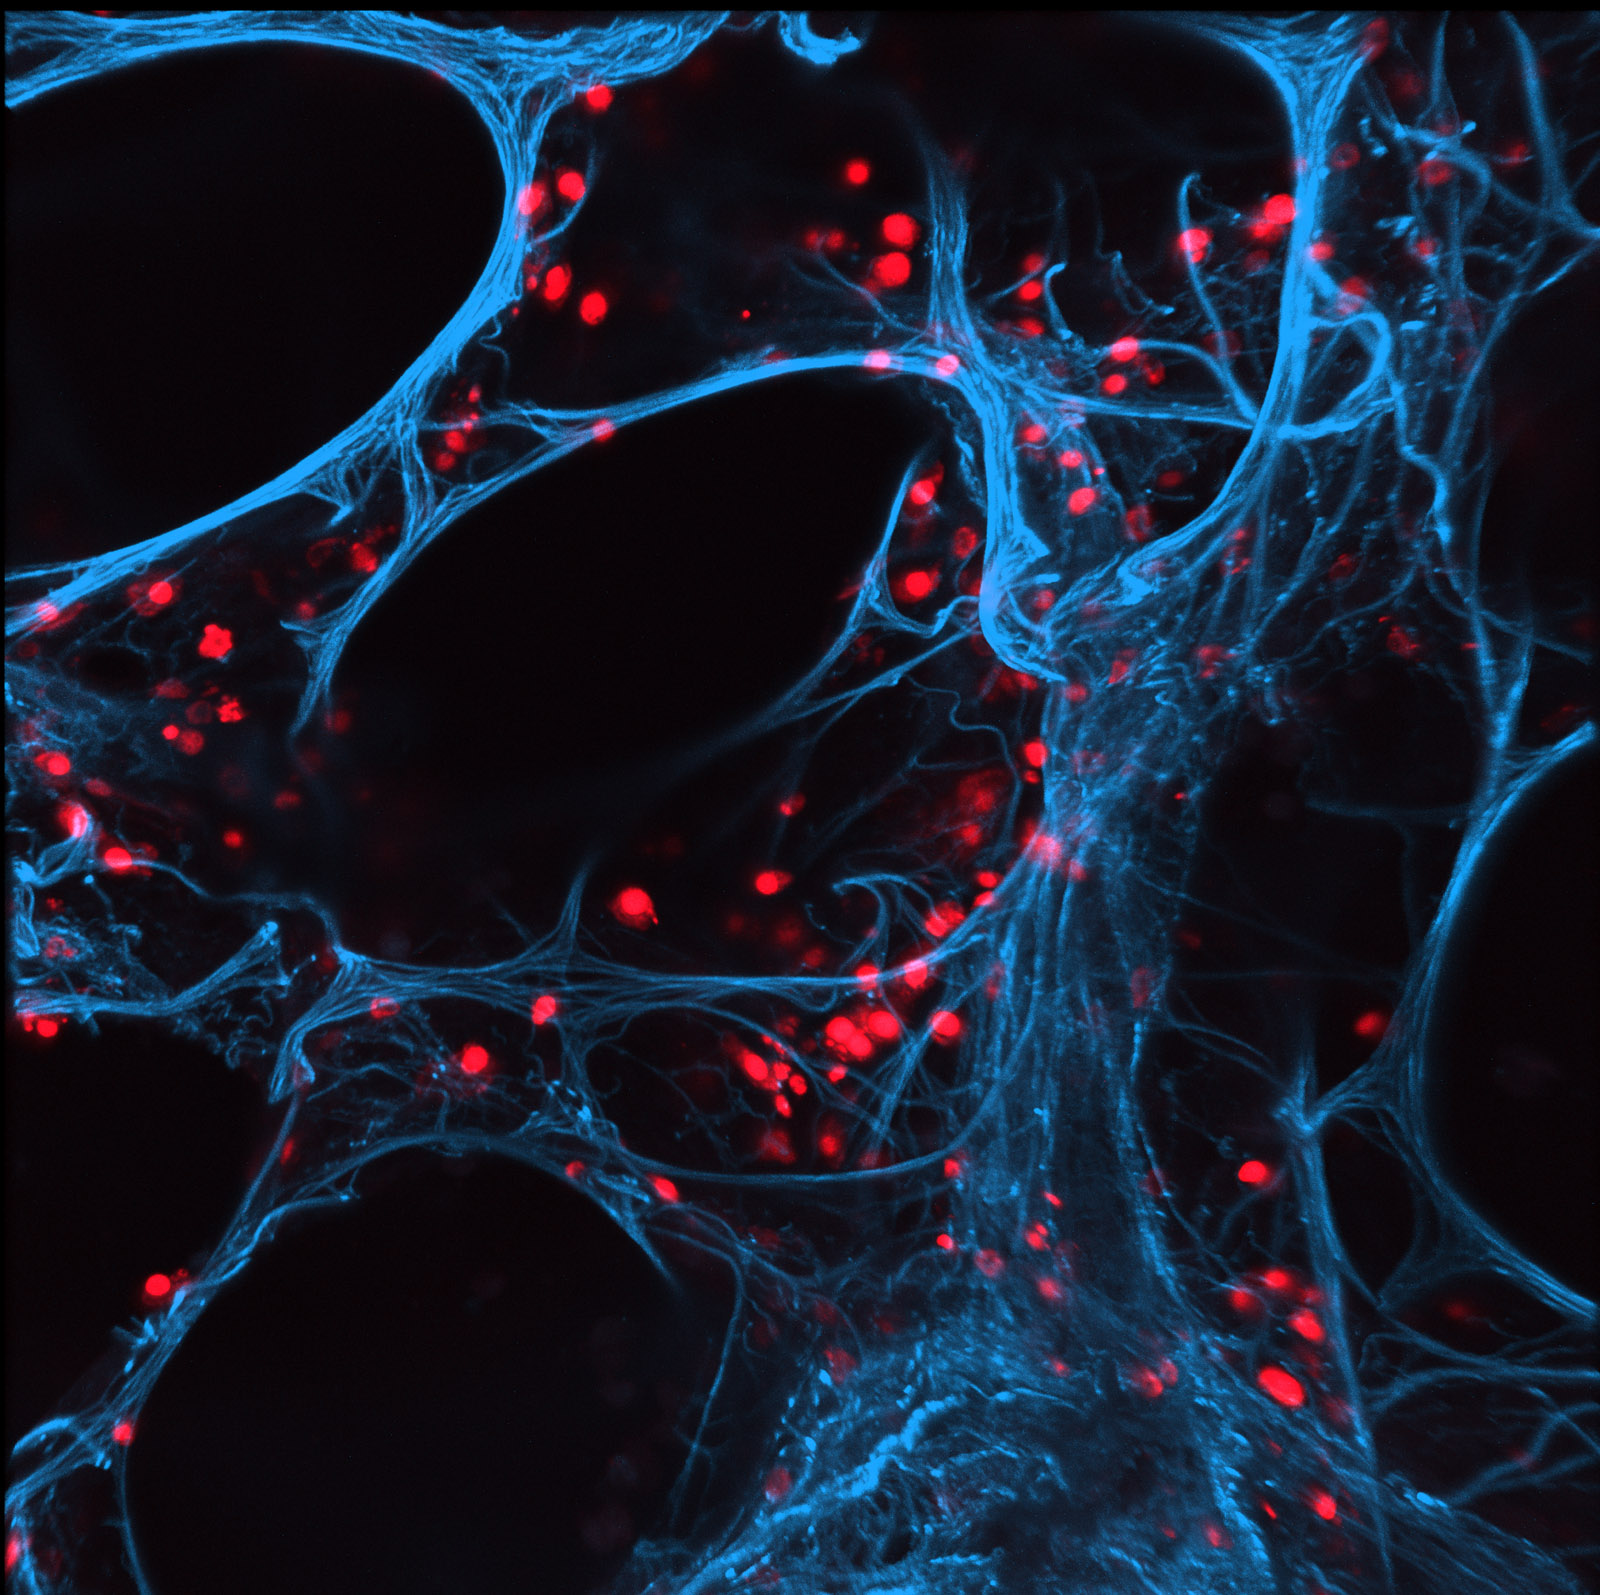 Für den Nachweis der Wirksamkeit neuer Wirkstoffe nutzen Fraunhofer-Wissenschaftler auch lebende menschliche Lungengewebsschnitte, sogenannte Precision-Cut Lung Slices (blau), die wie hier mit Grippeviren (rot) infiziert werden können.